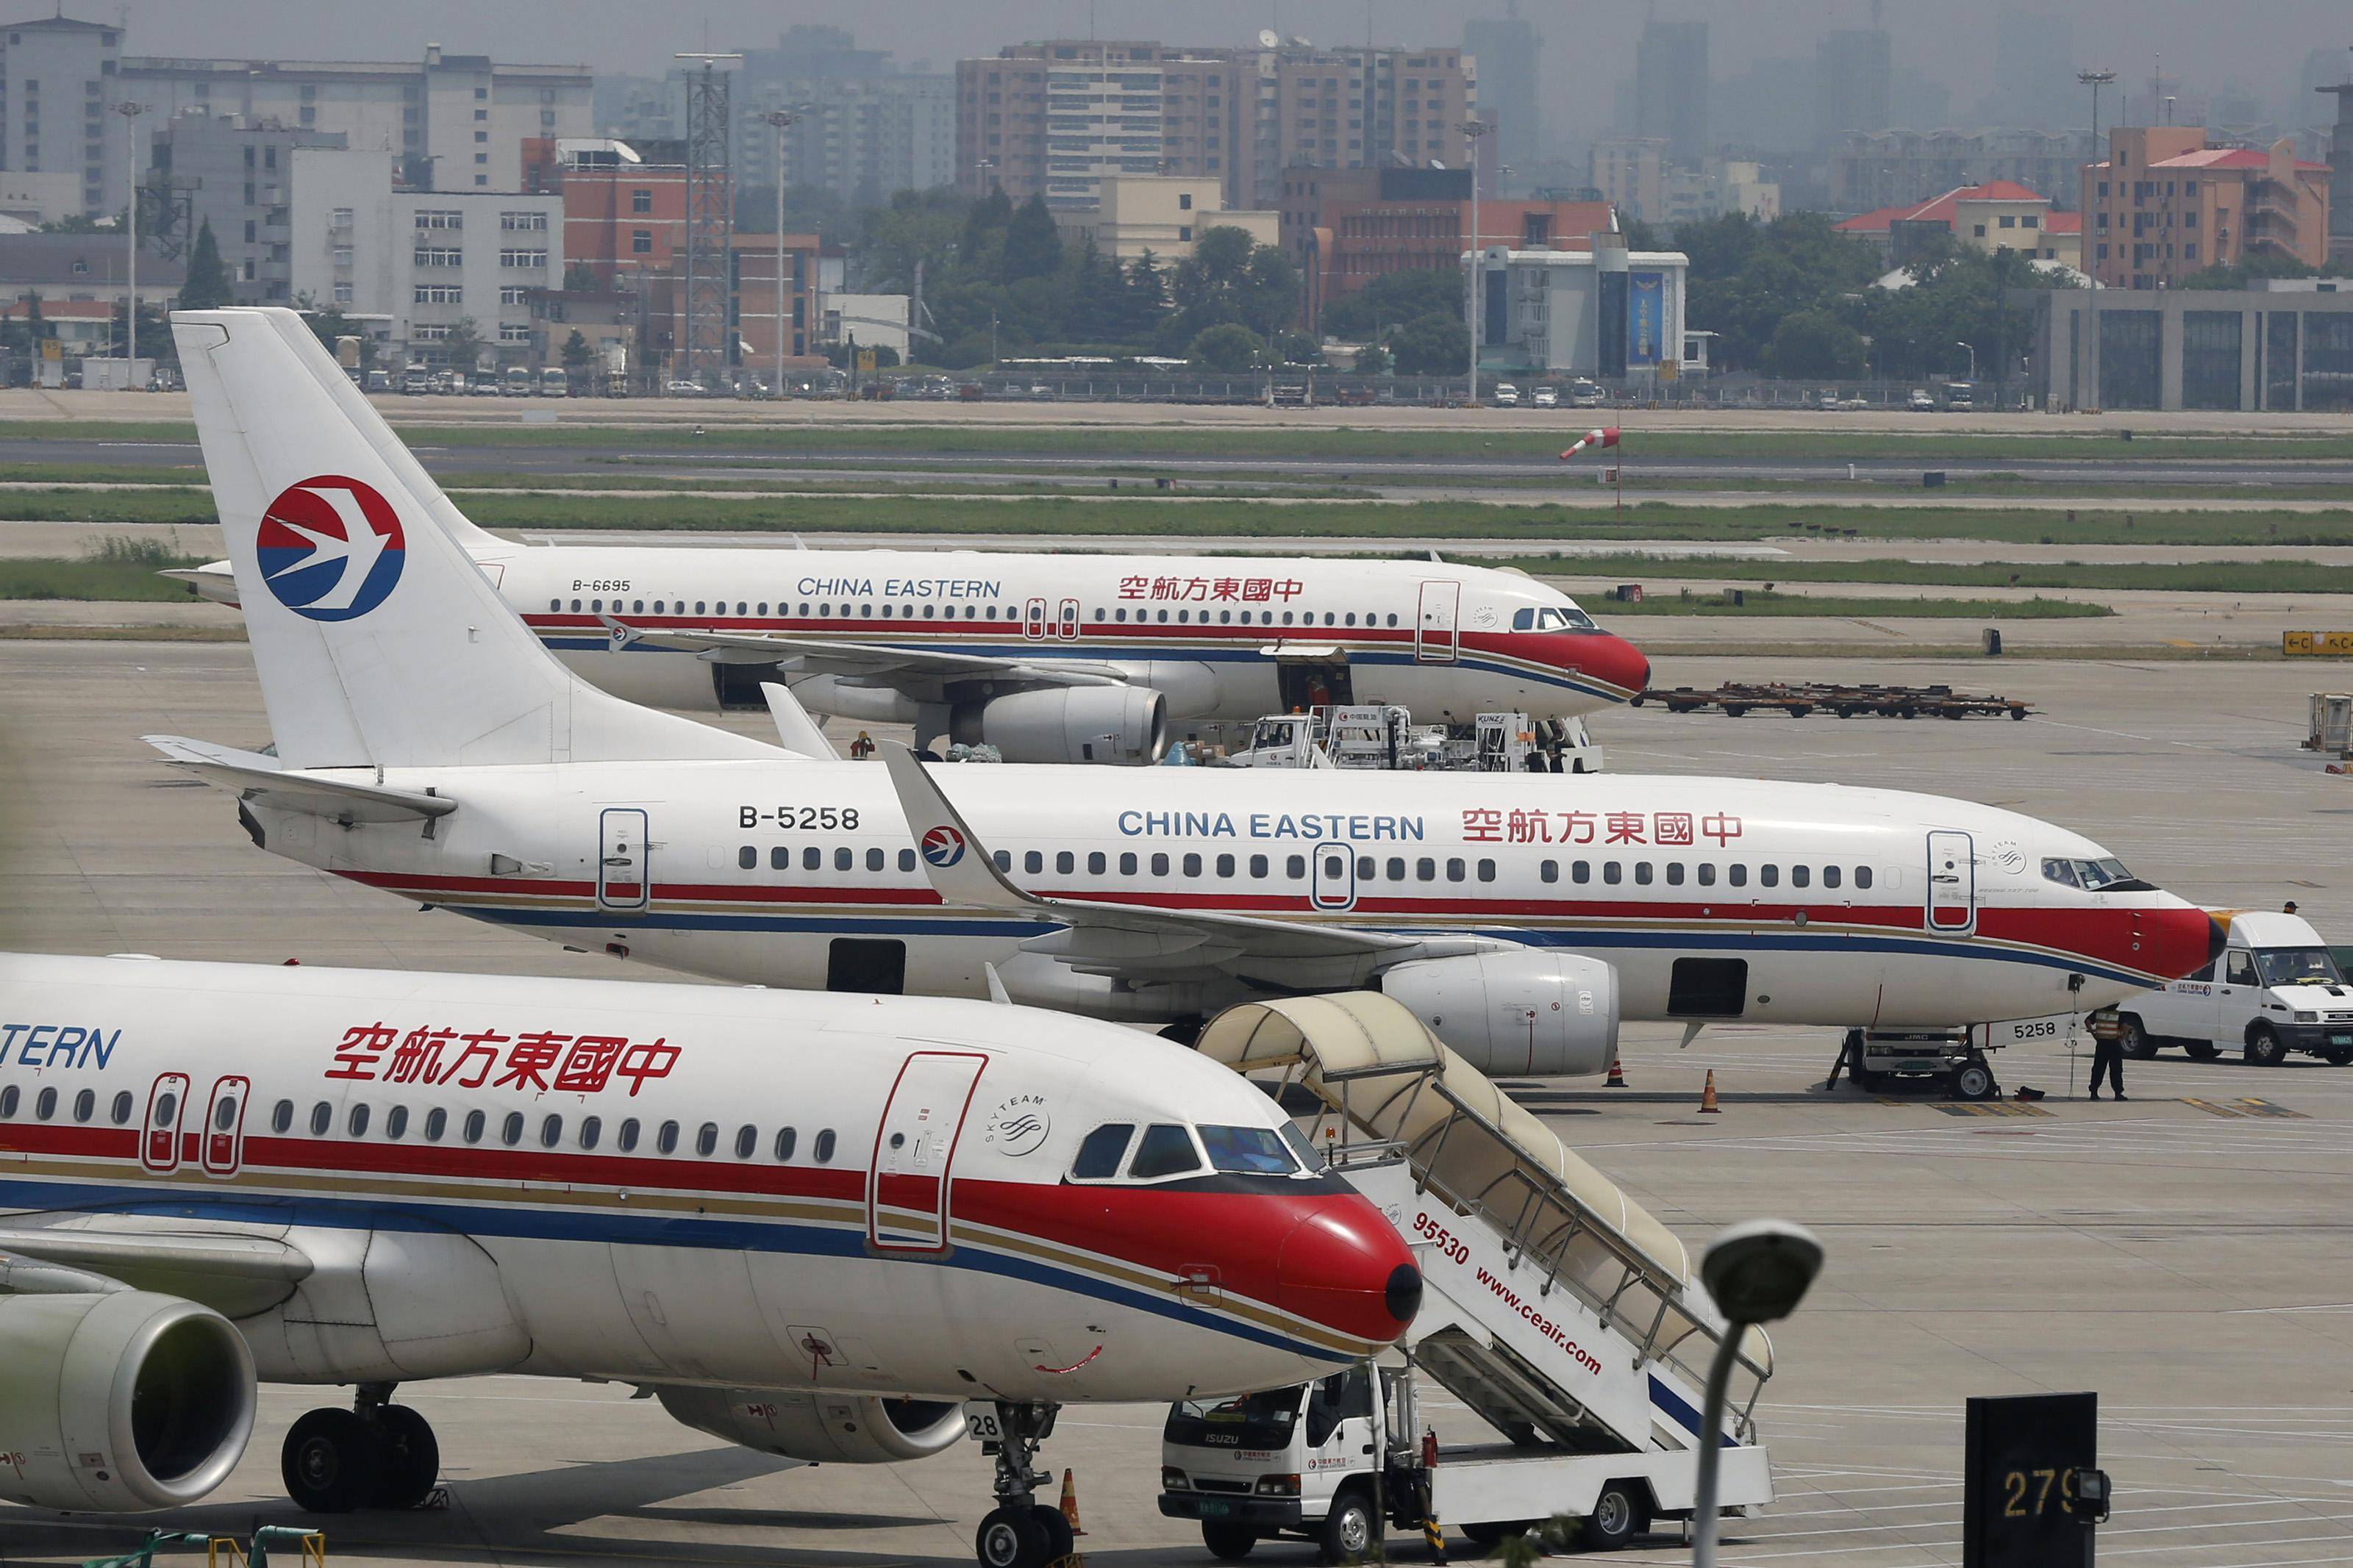 Китайские южные авиалинии авиакомпания - официальный сайт china southern airlines, контакты, авиабилеты и расписание рейсов  2021